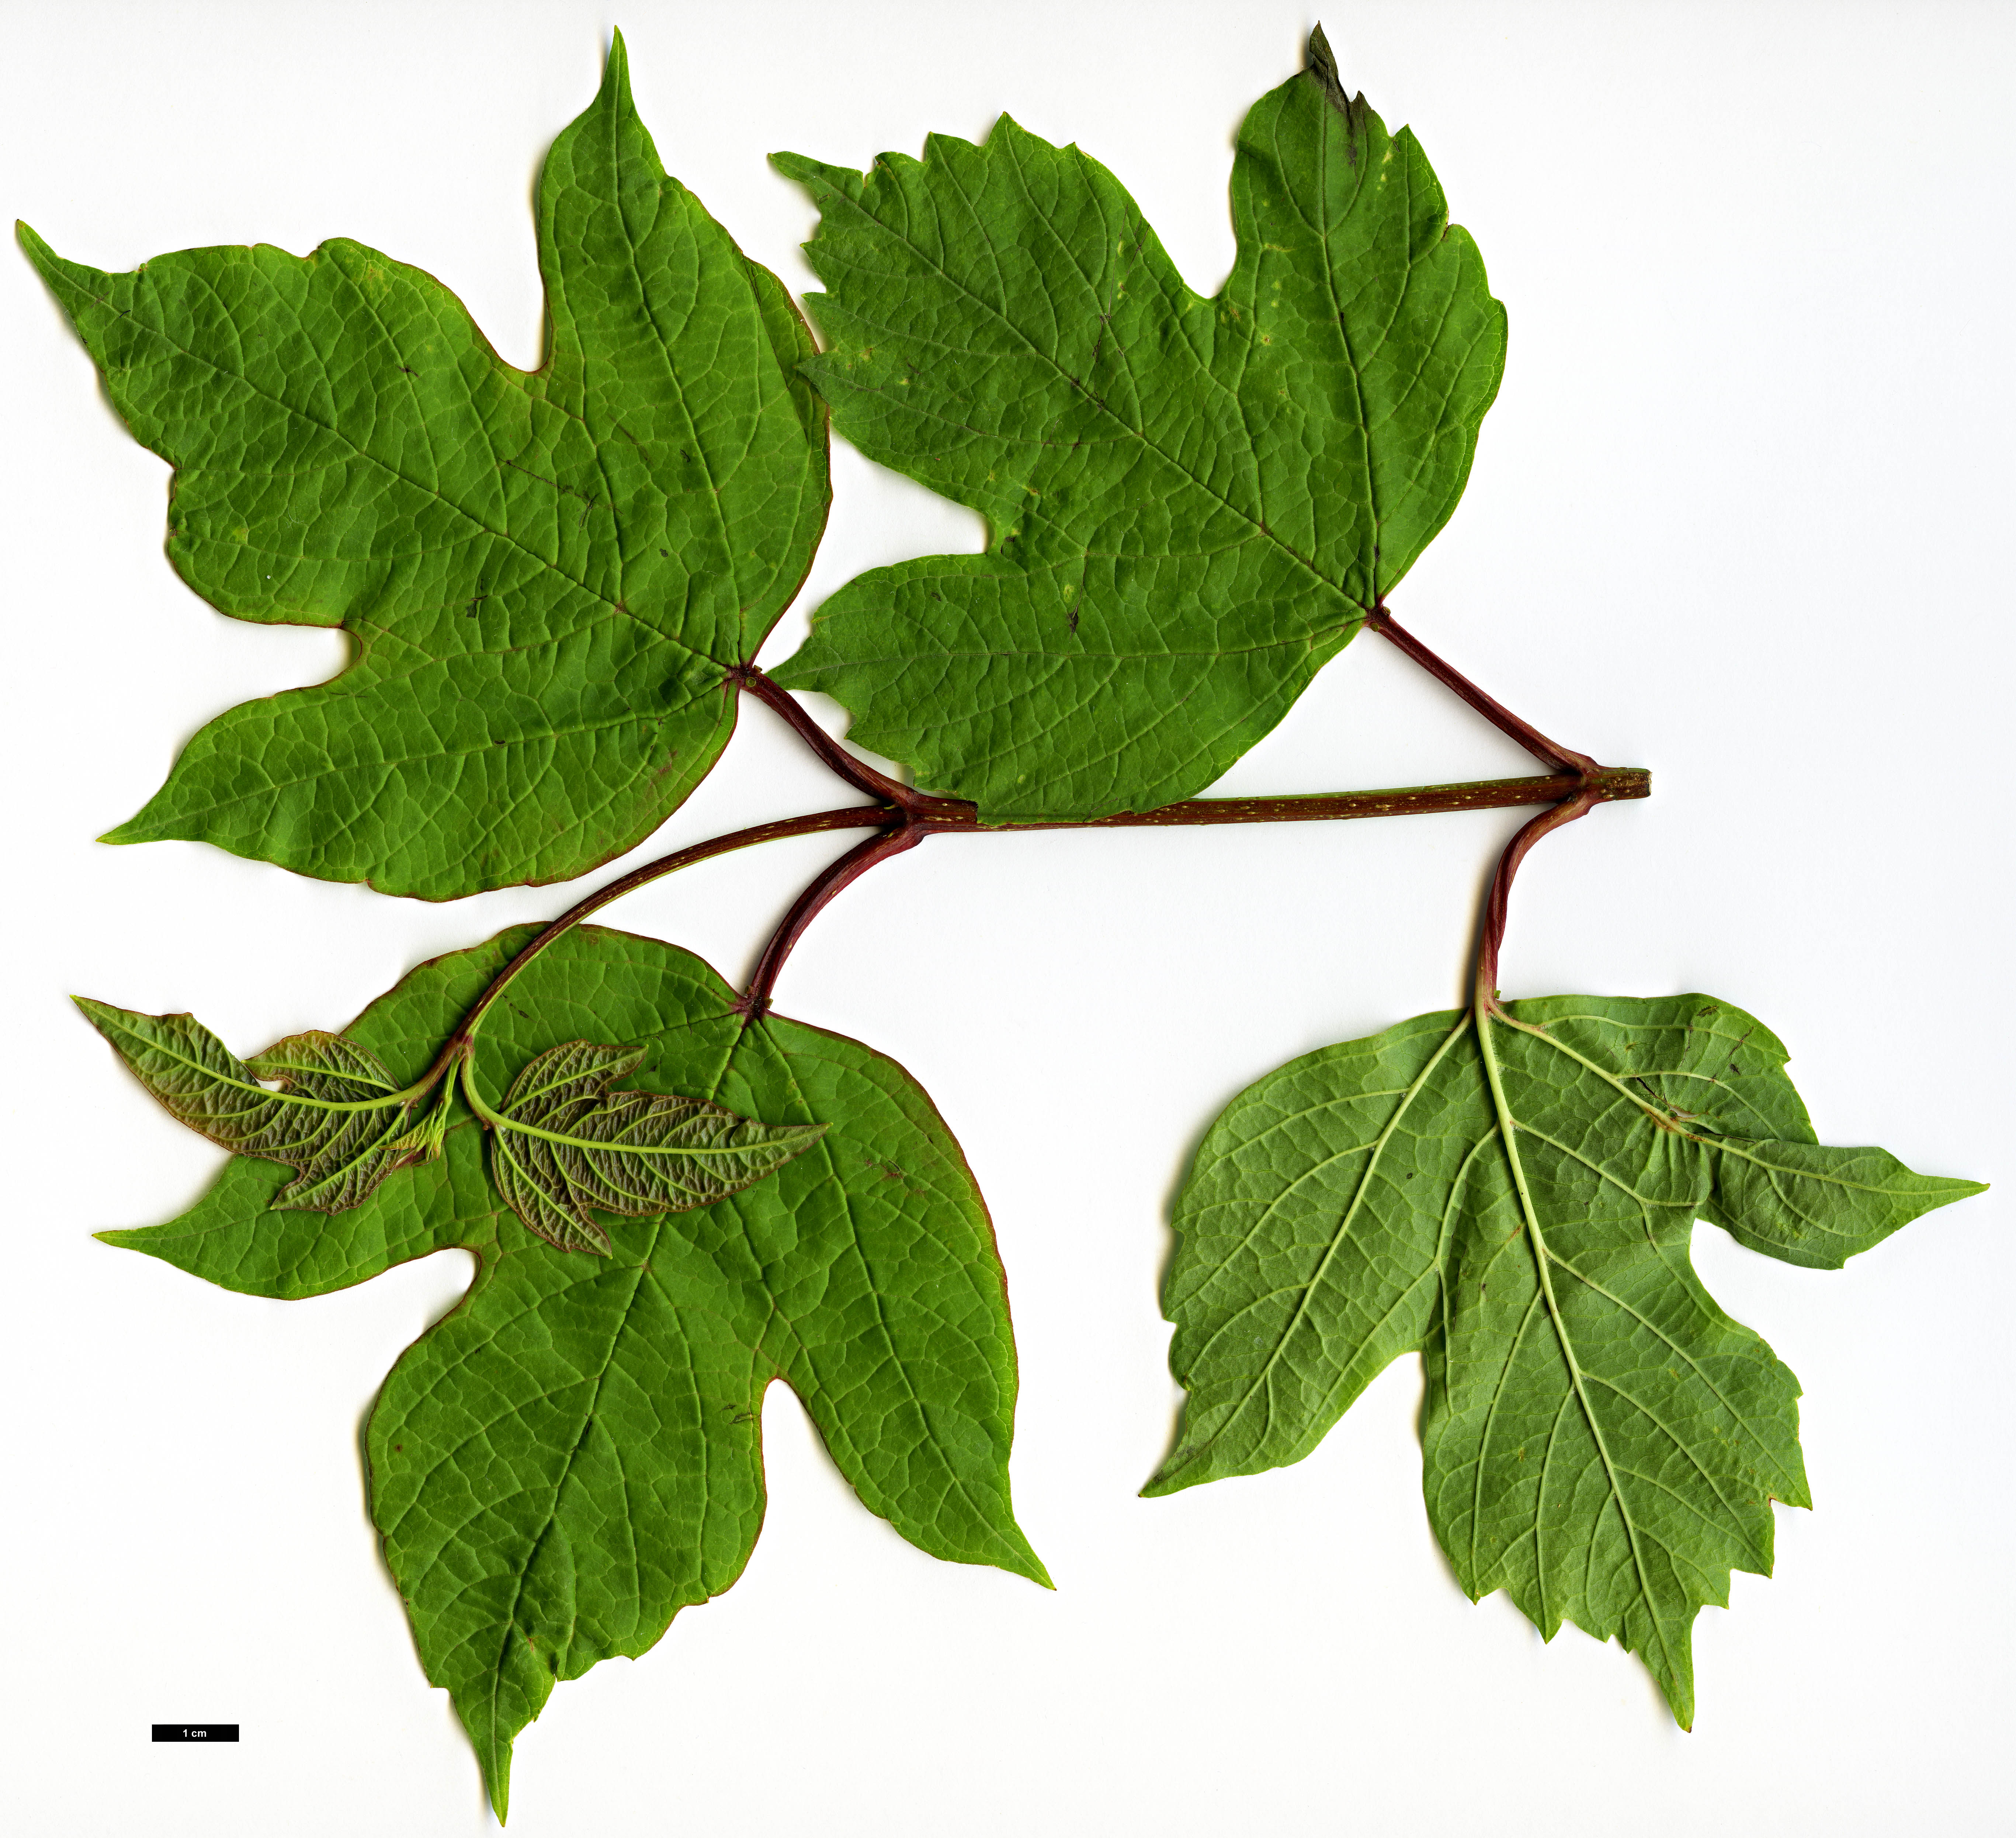 High resolution image: Family: Adoxaceae - Genus: Viburnum - Taxon: opulus - SpeciesSub: var. calvescens